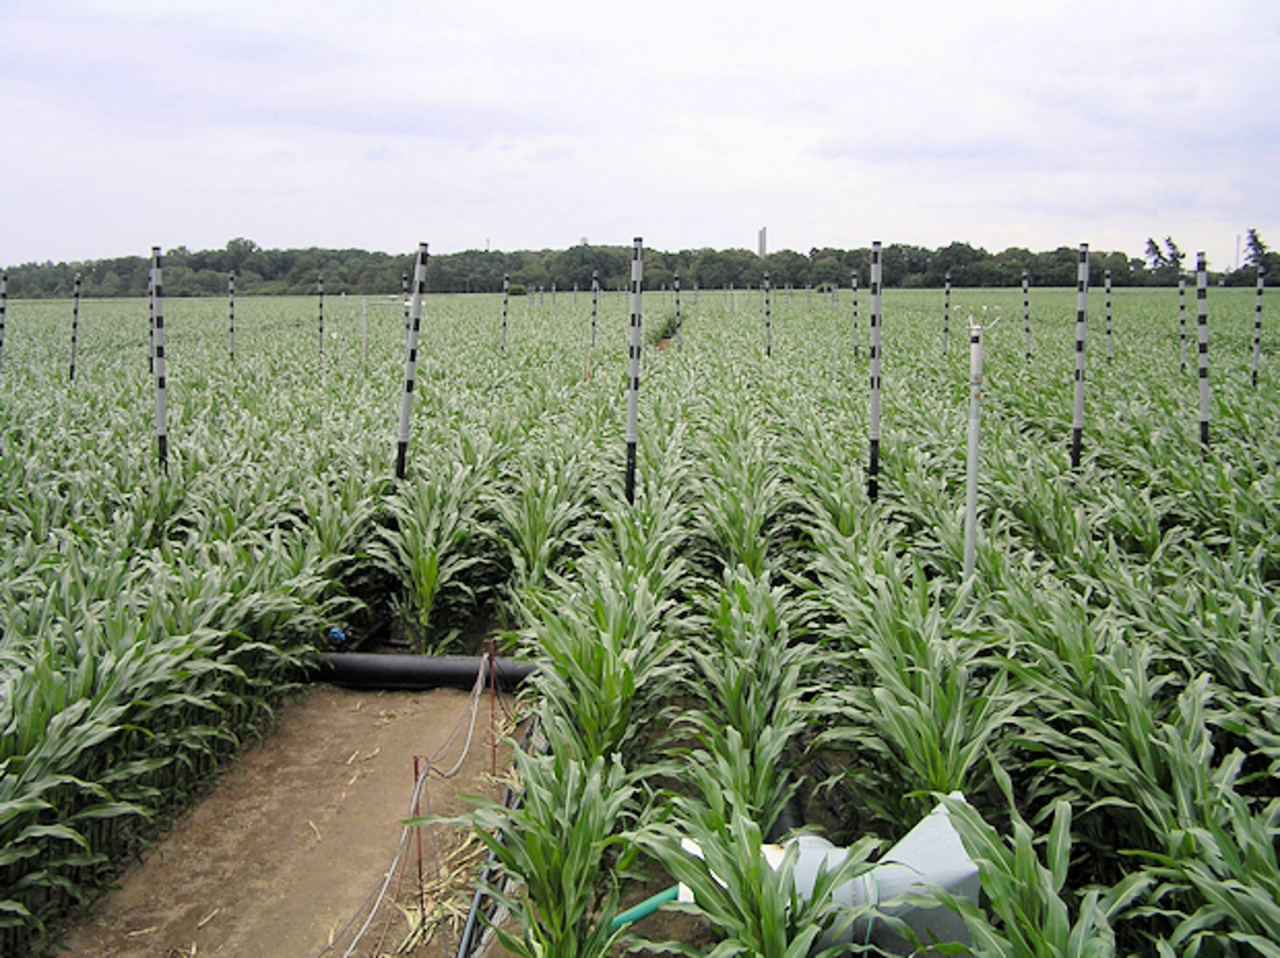 Maisfeld im Frühjahr 2008. Zu sehen sind Teile des FACE-Rings (graue Röhren), mit denen das Kohlendioxid in den Bestand geblasen wird.